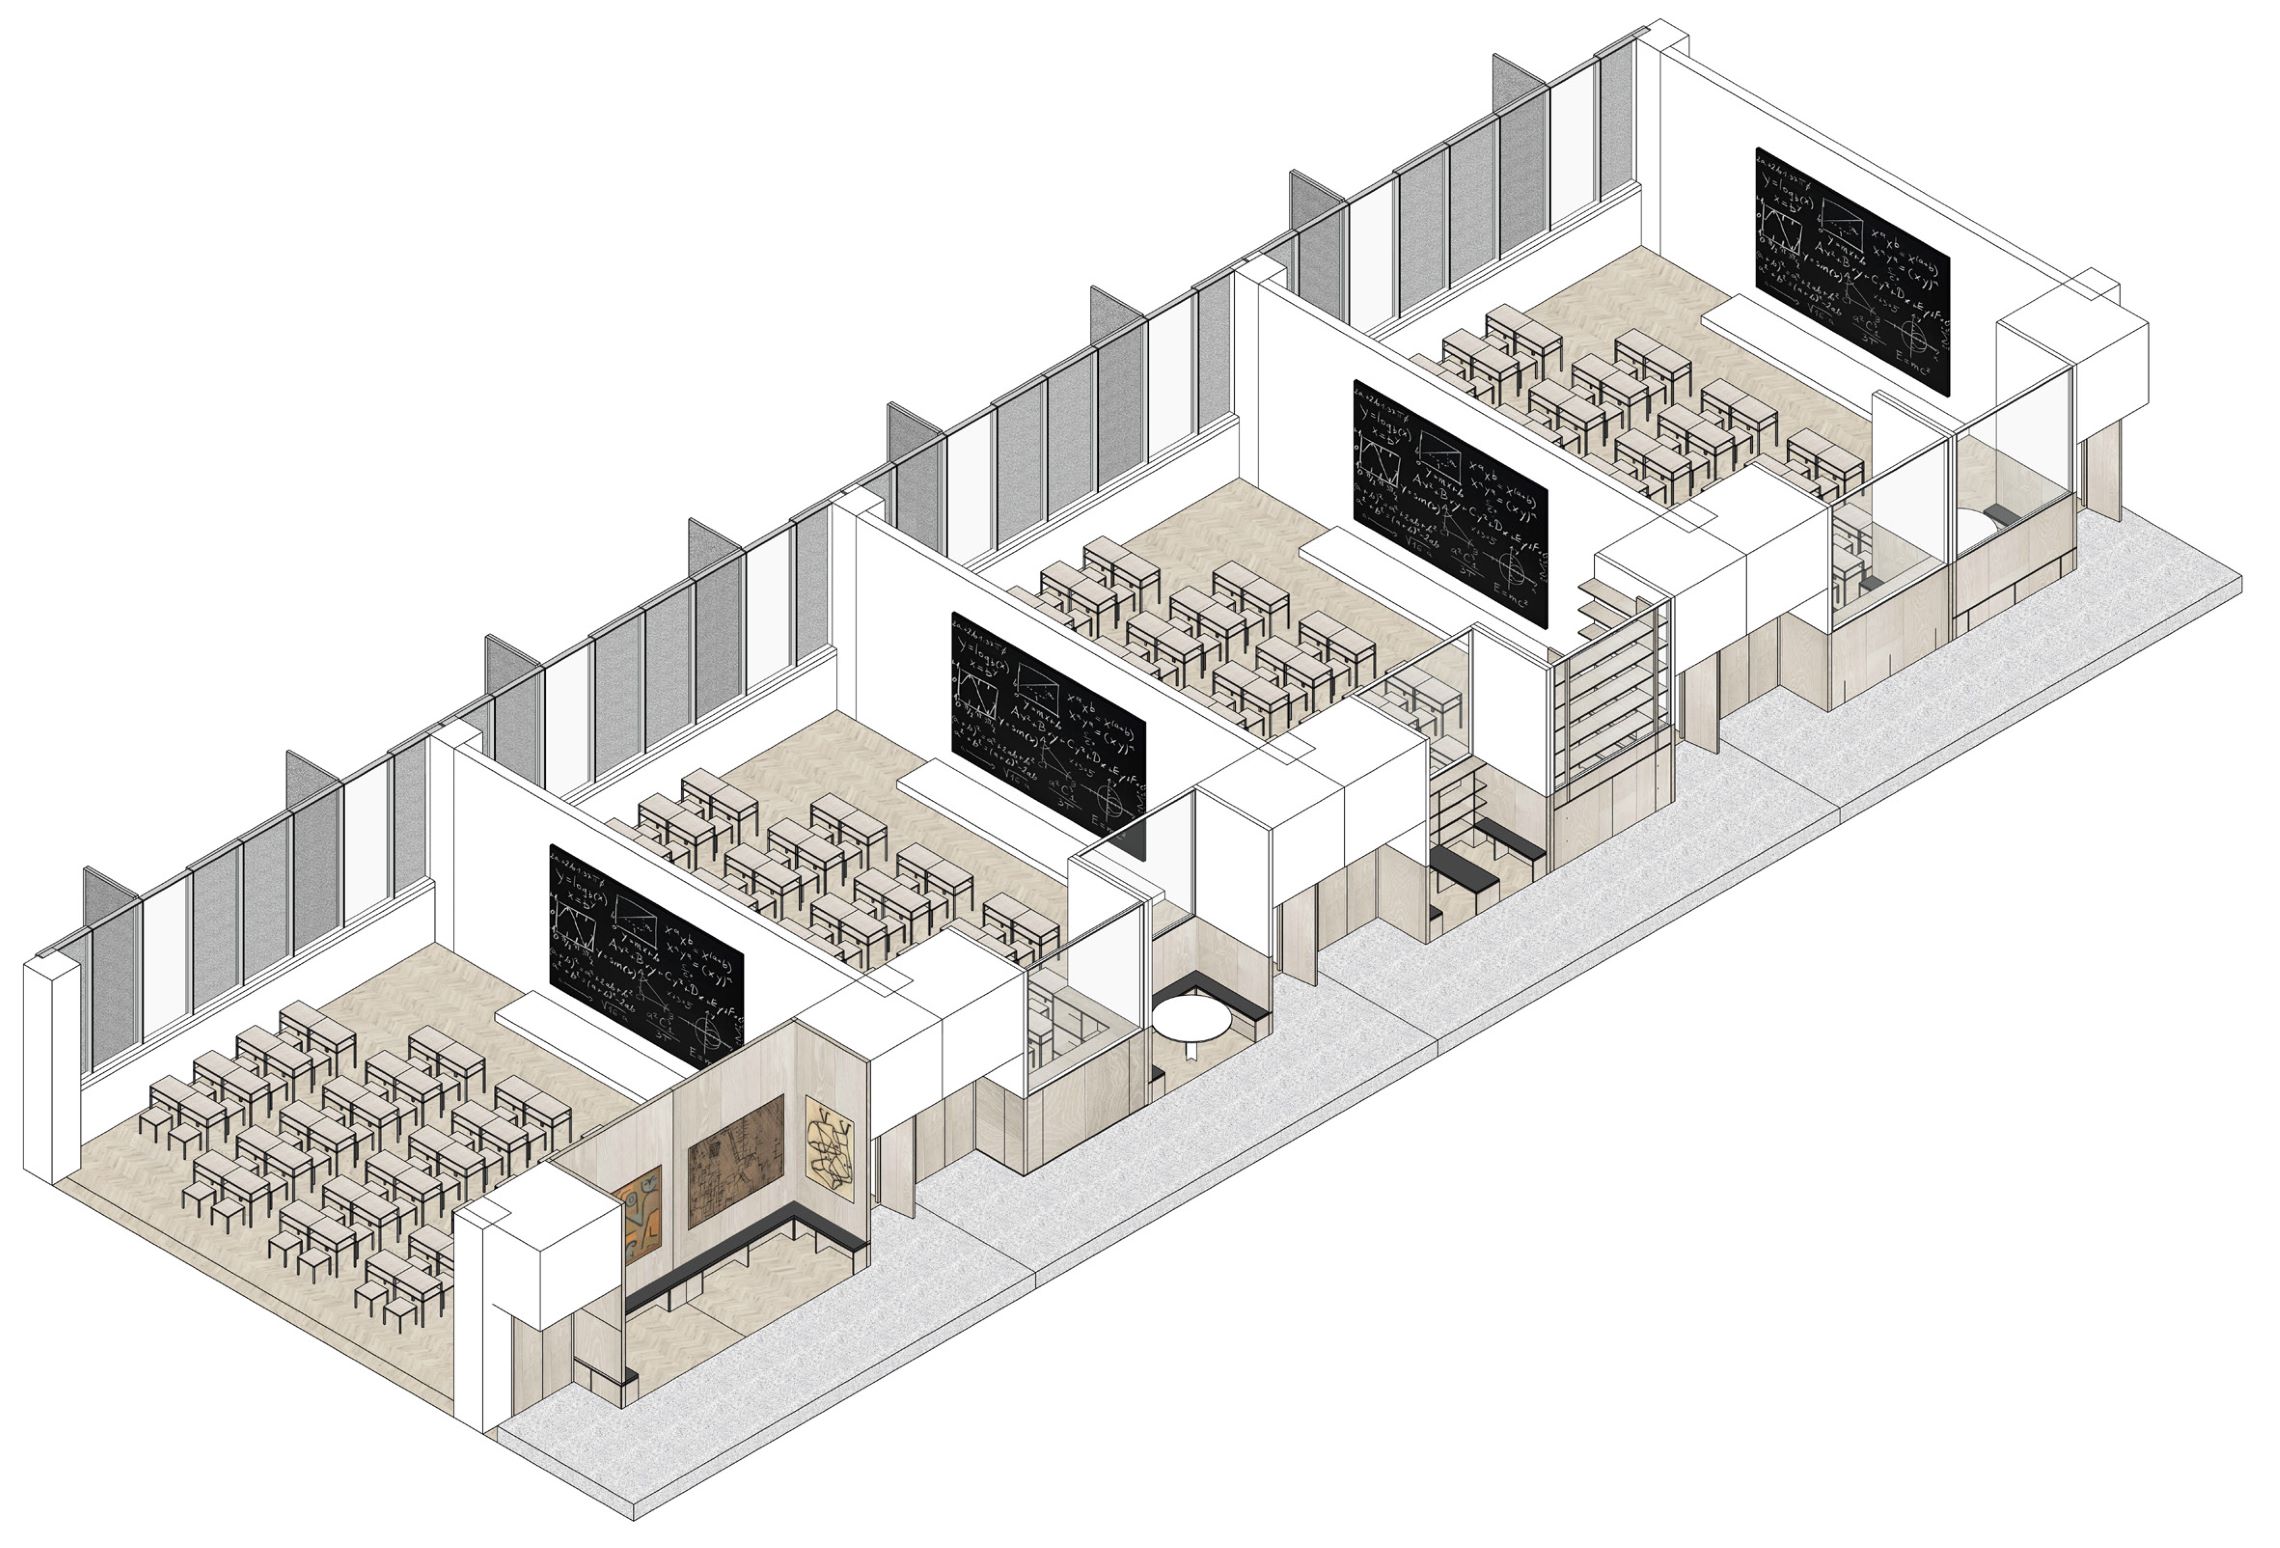 图34. 临界建筑的福田中学中标案对教室面向外走廊界面的五种空间模块及其灵活组合轴测示意图